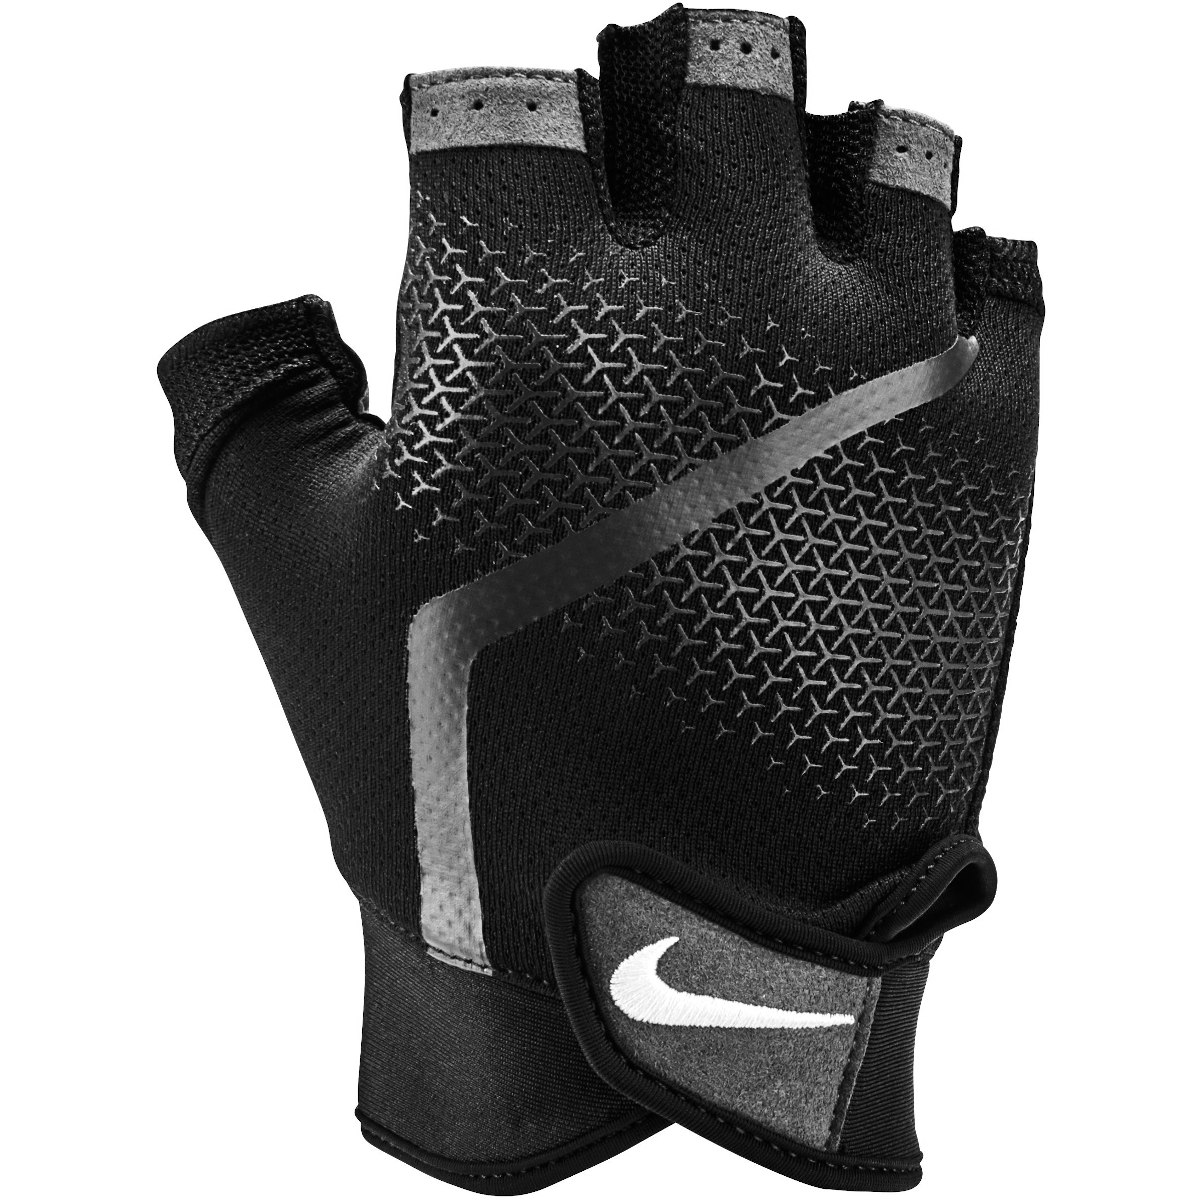 Produktbild von Nike Herren Extreme Fitness-Handschuhe - black/anthracite/white 945